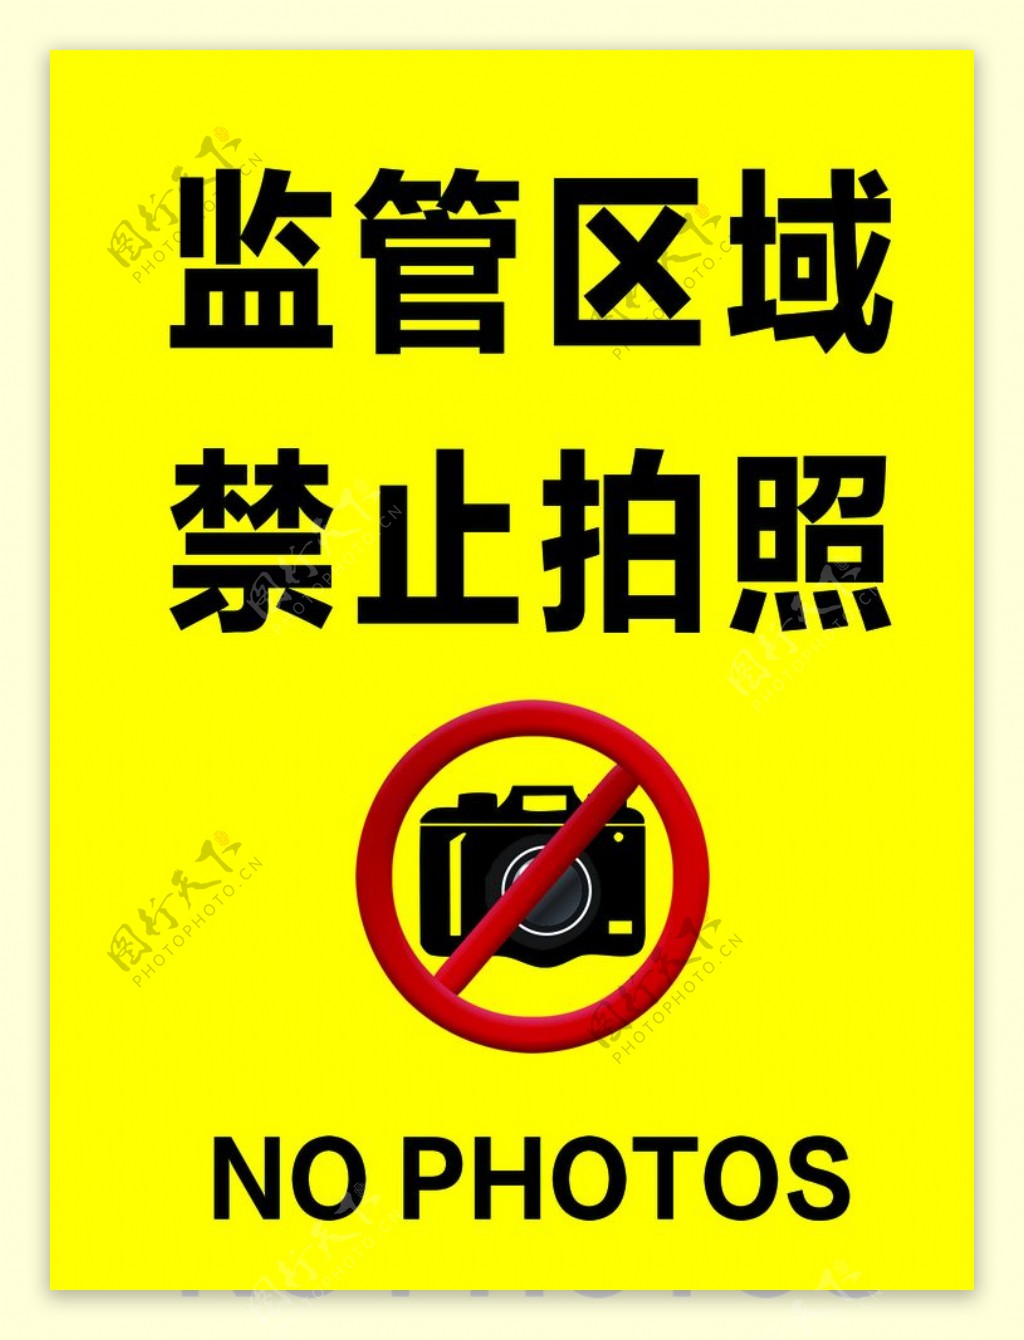 监管区域禁止拍照